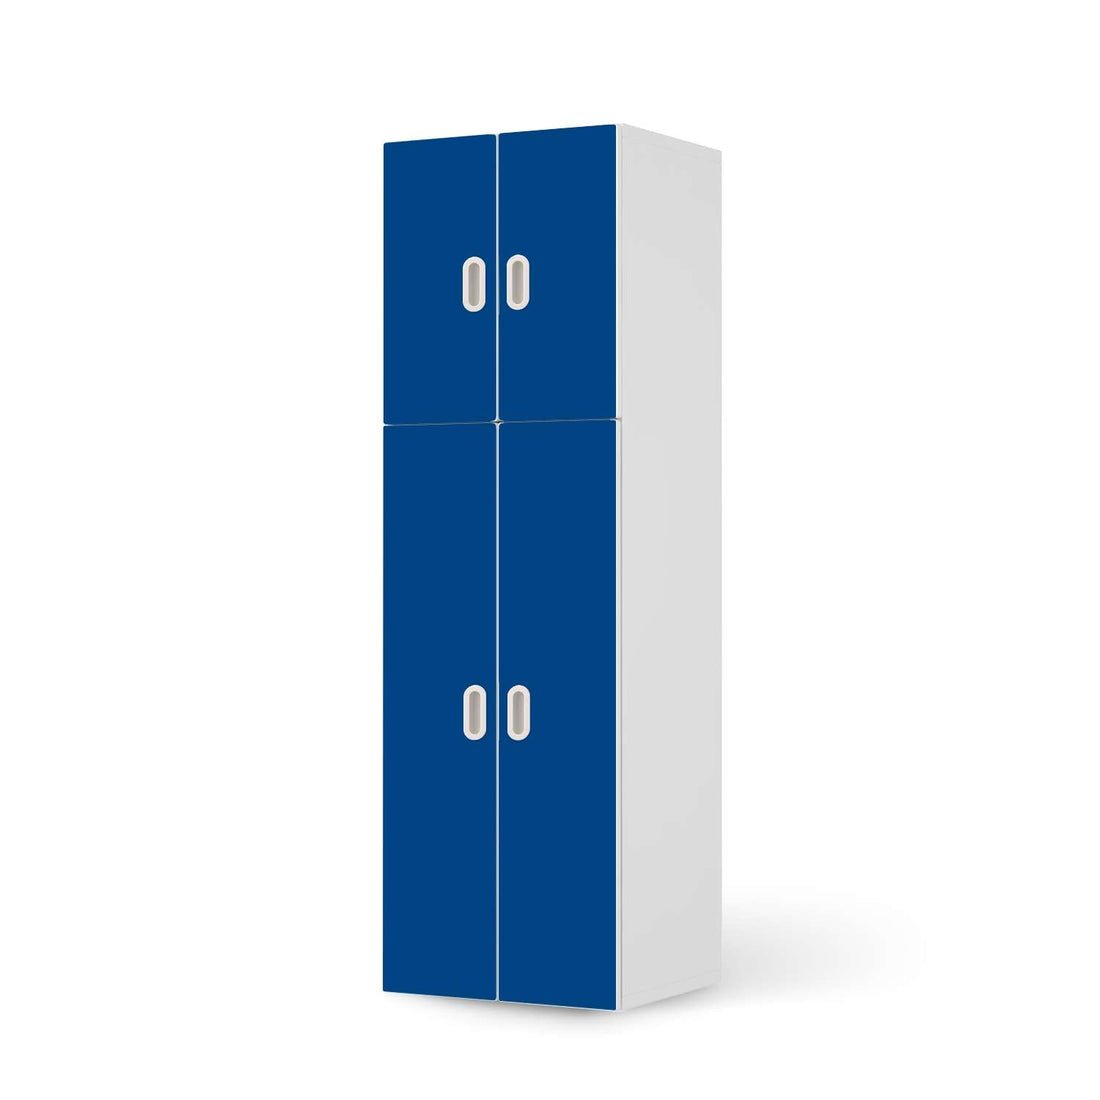 Selbstklebende Folie Blau Dark - IKEA Stuva / Fritids kombiniert - 2 große Türen und 2 kleine Türen  - weiss